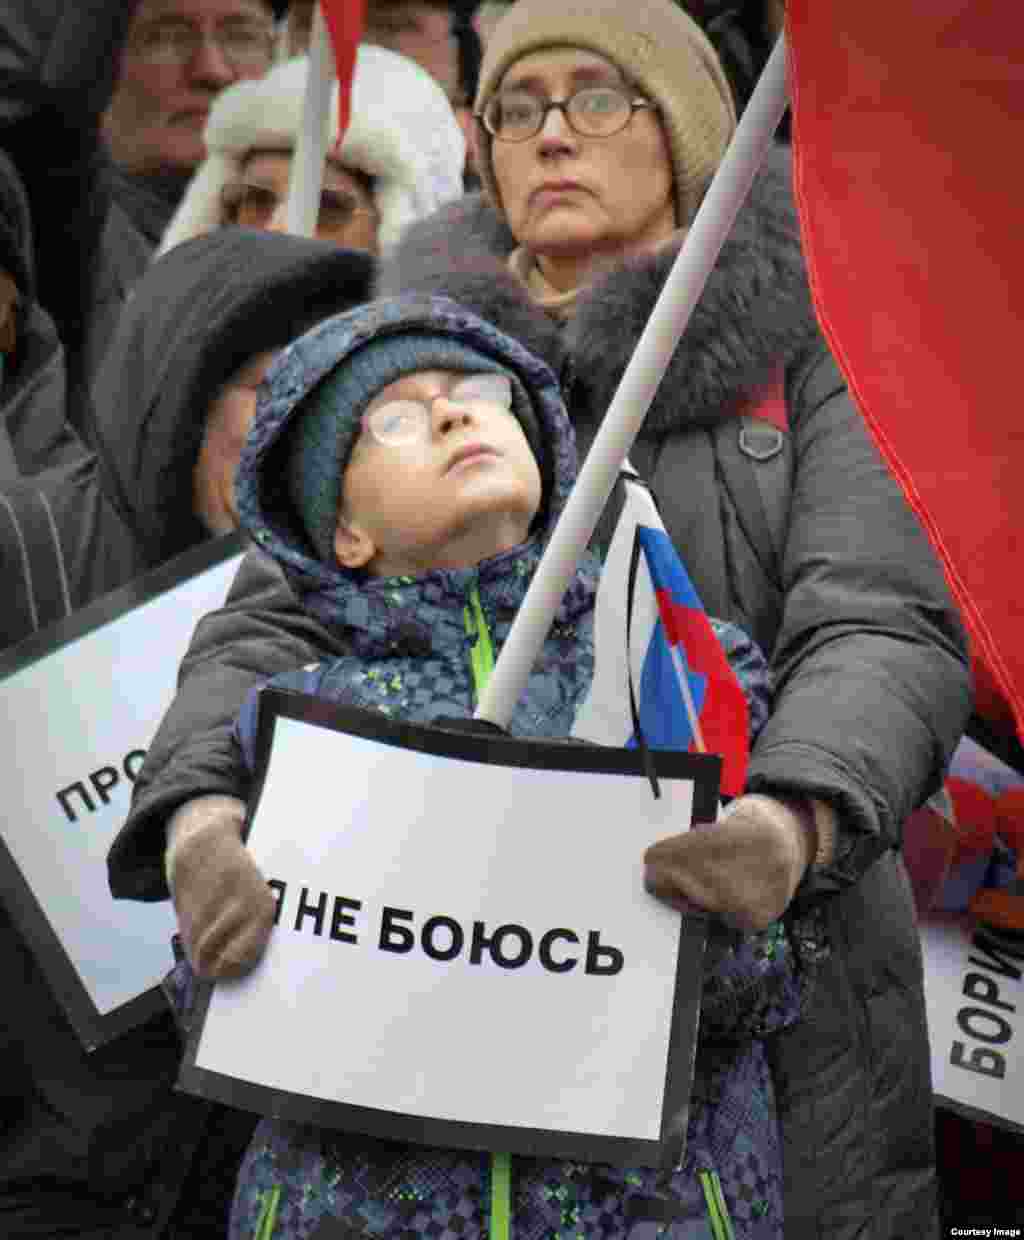 러시아 모스크바에서 괴한의 총에 맞아 사망한 야권 지도자 보리스 넴초프를 추모하는 거리 시위가 벌어졌다. 참가자가 "나는 두렵지 않다"는 문구를 들고 있다.